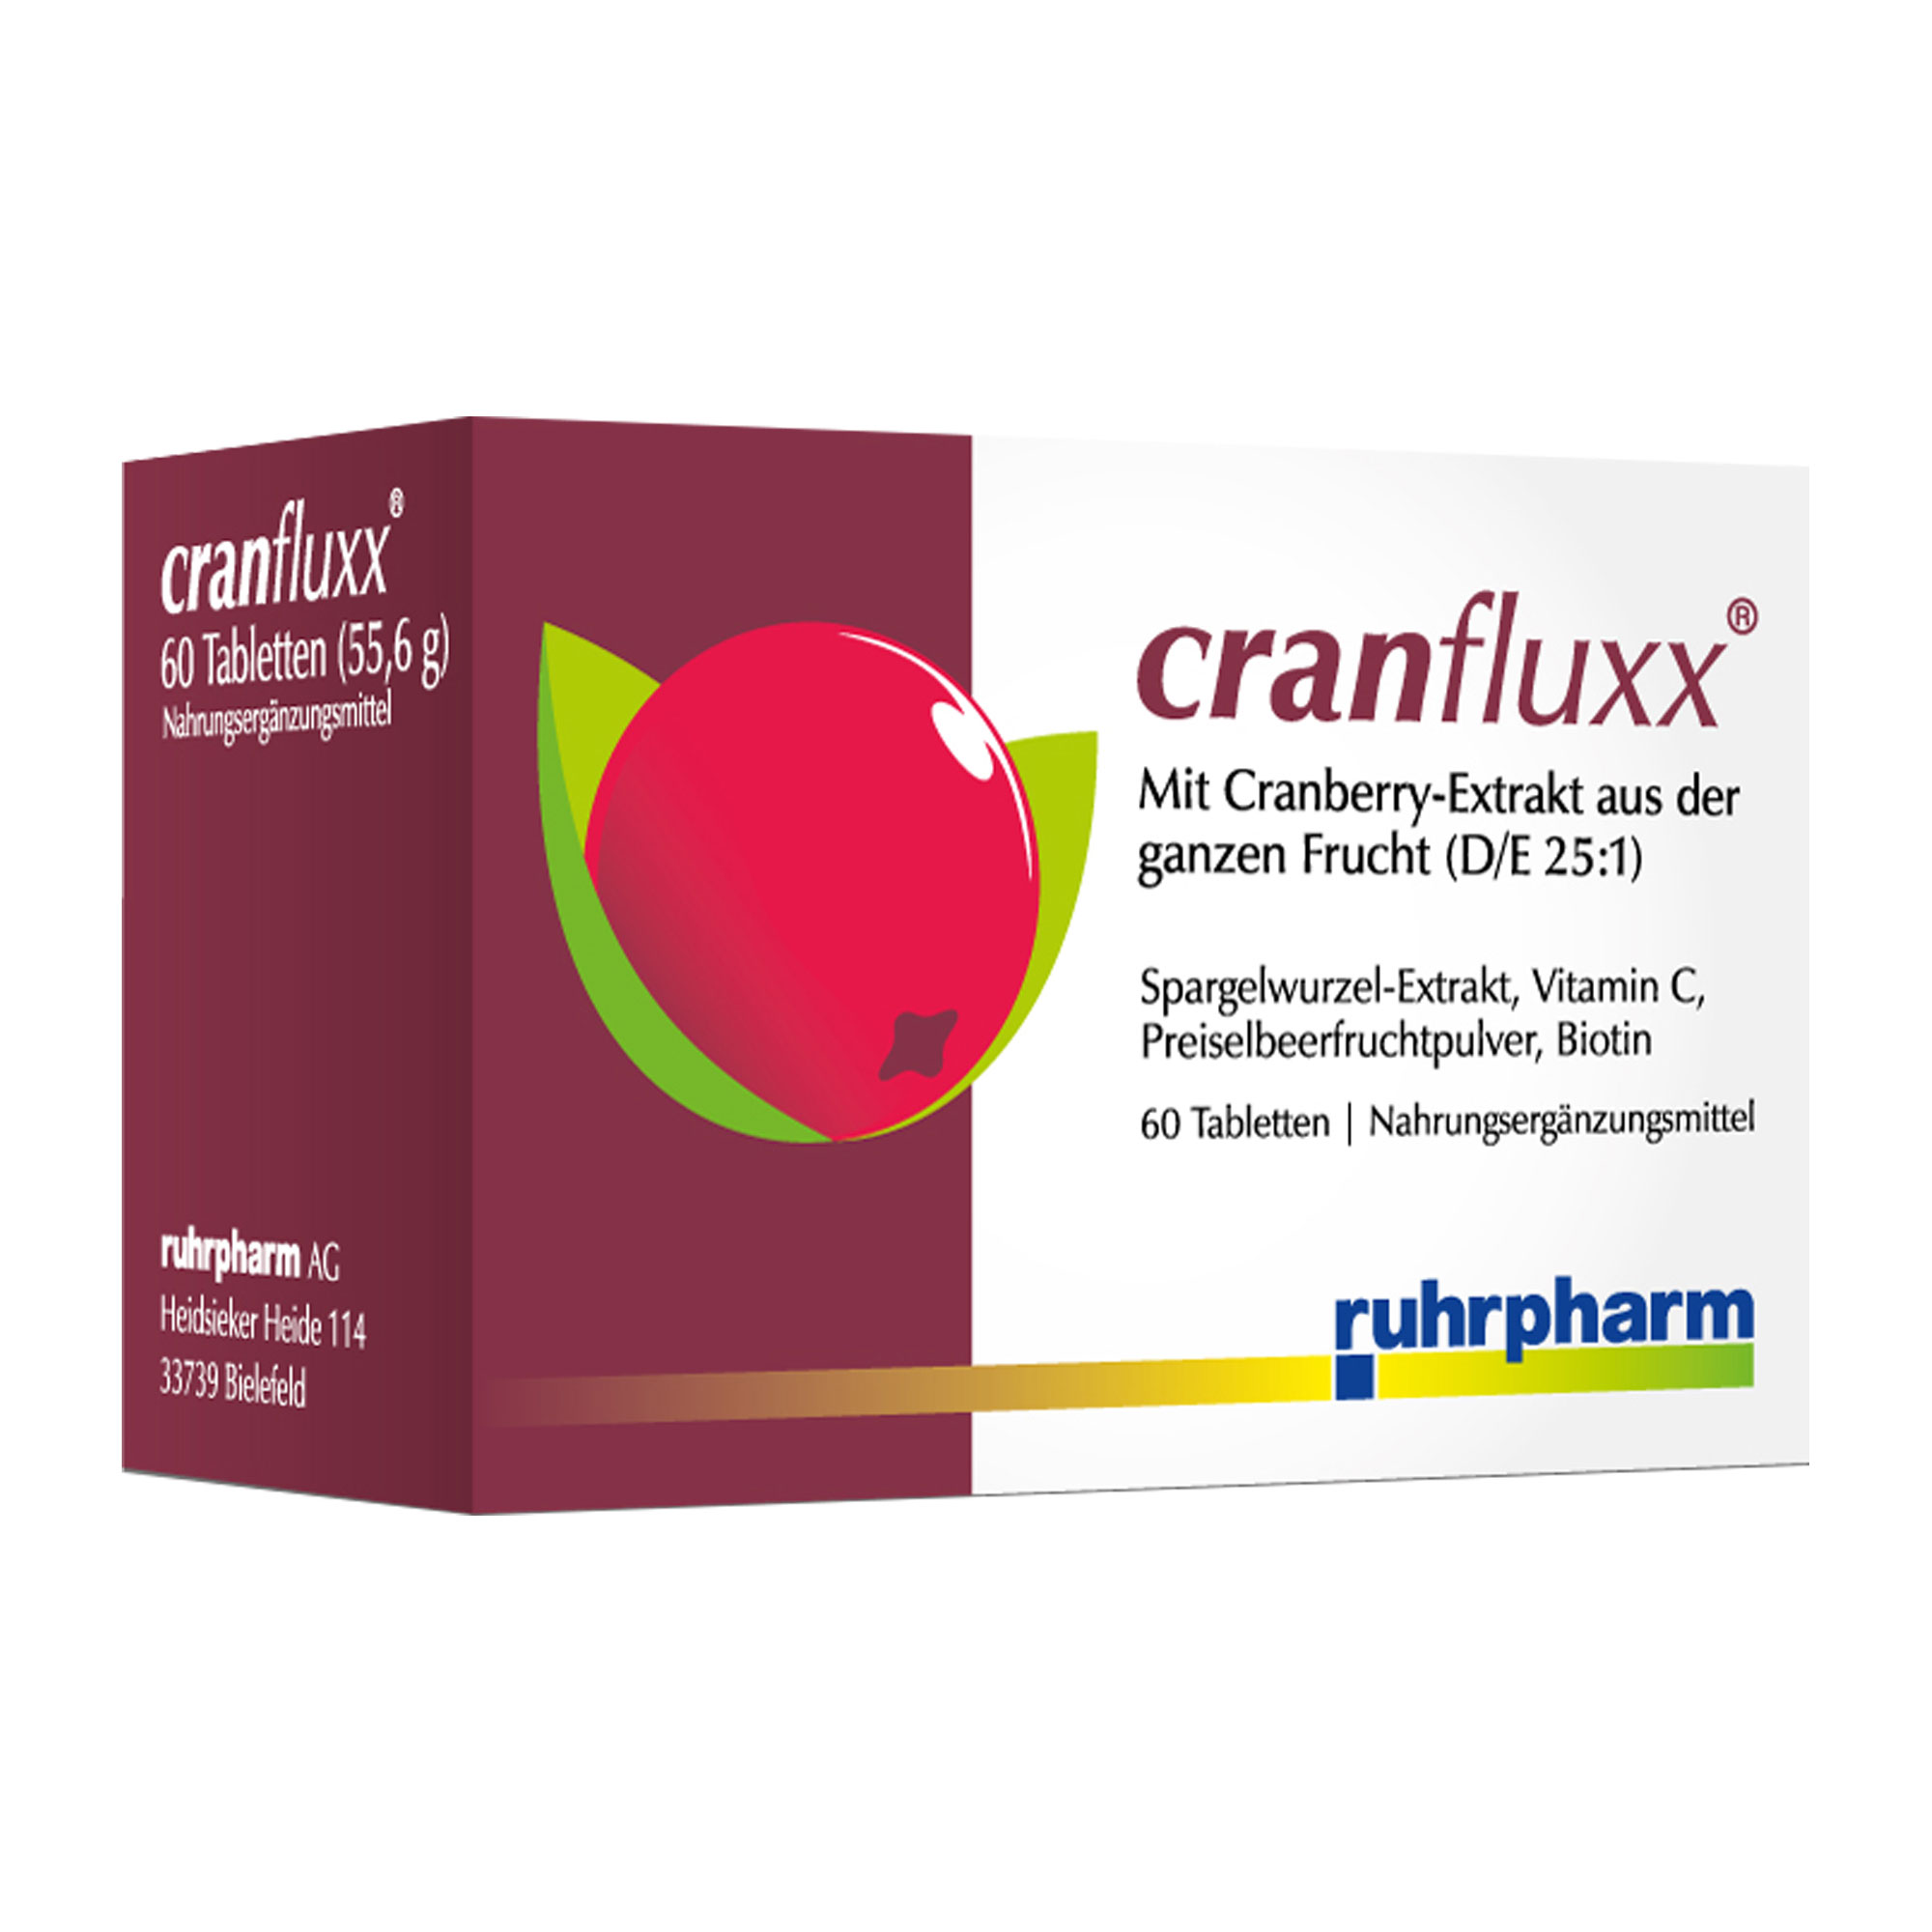 Nahrungsergänzungsmittel mit Cranberry-Extrakt aus der ganzen Frucht (D/E 25:1).